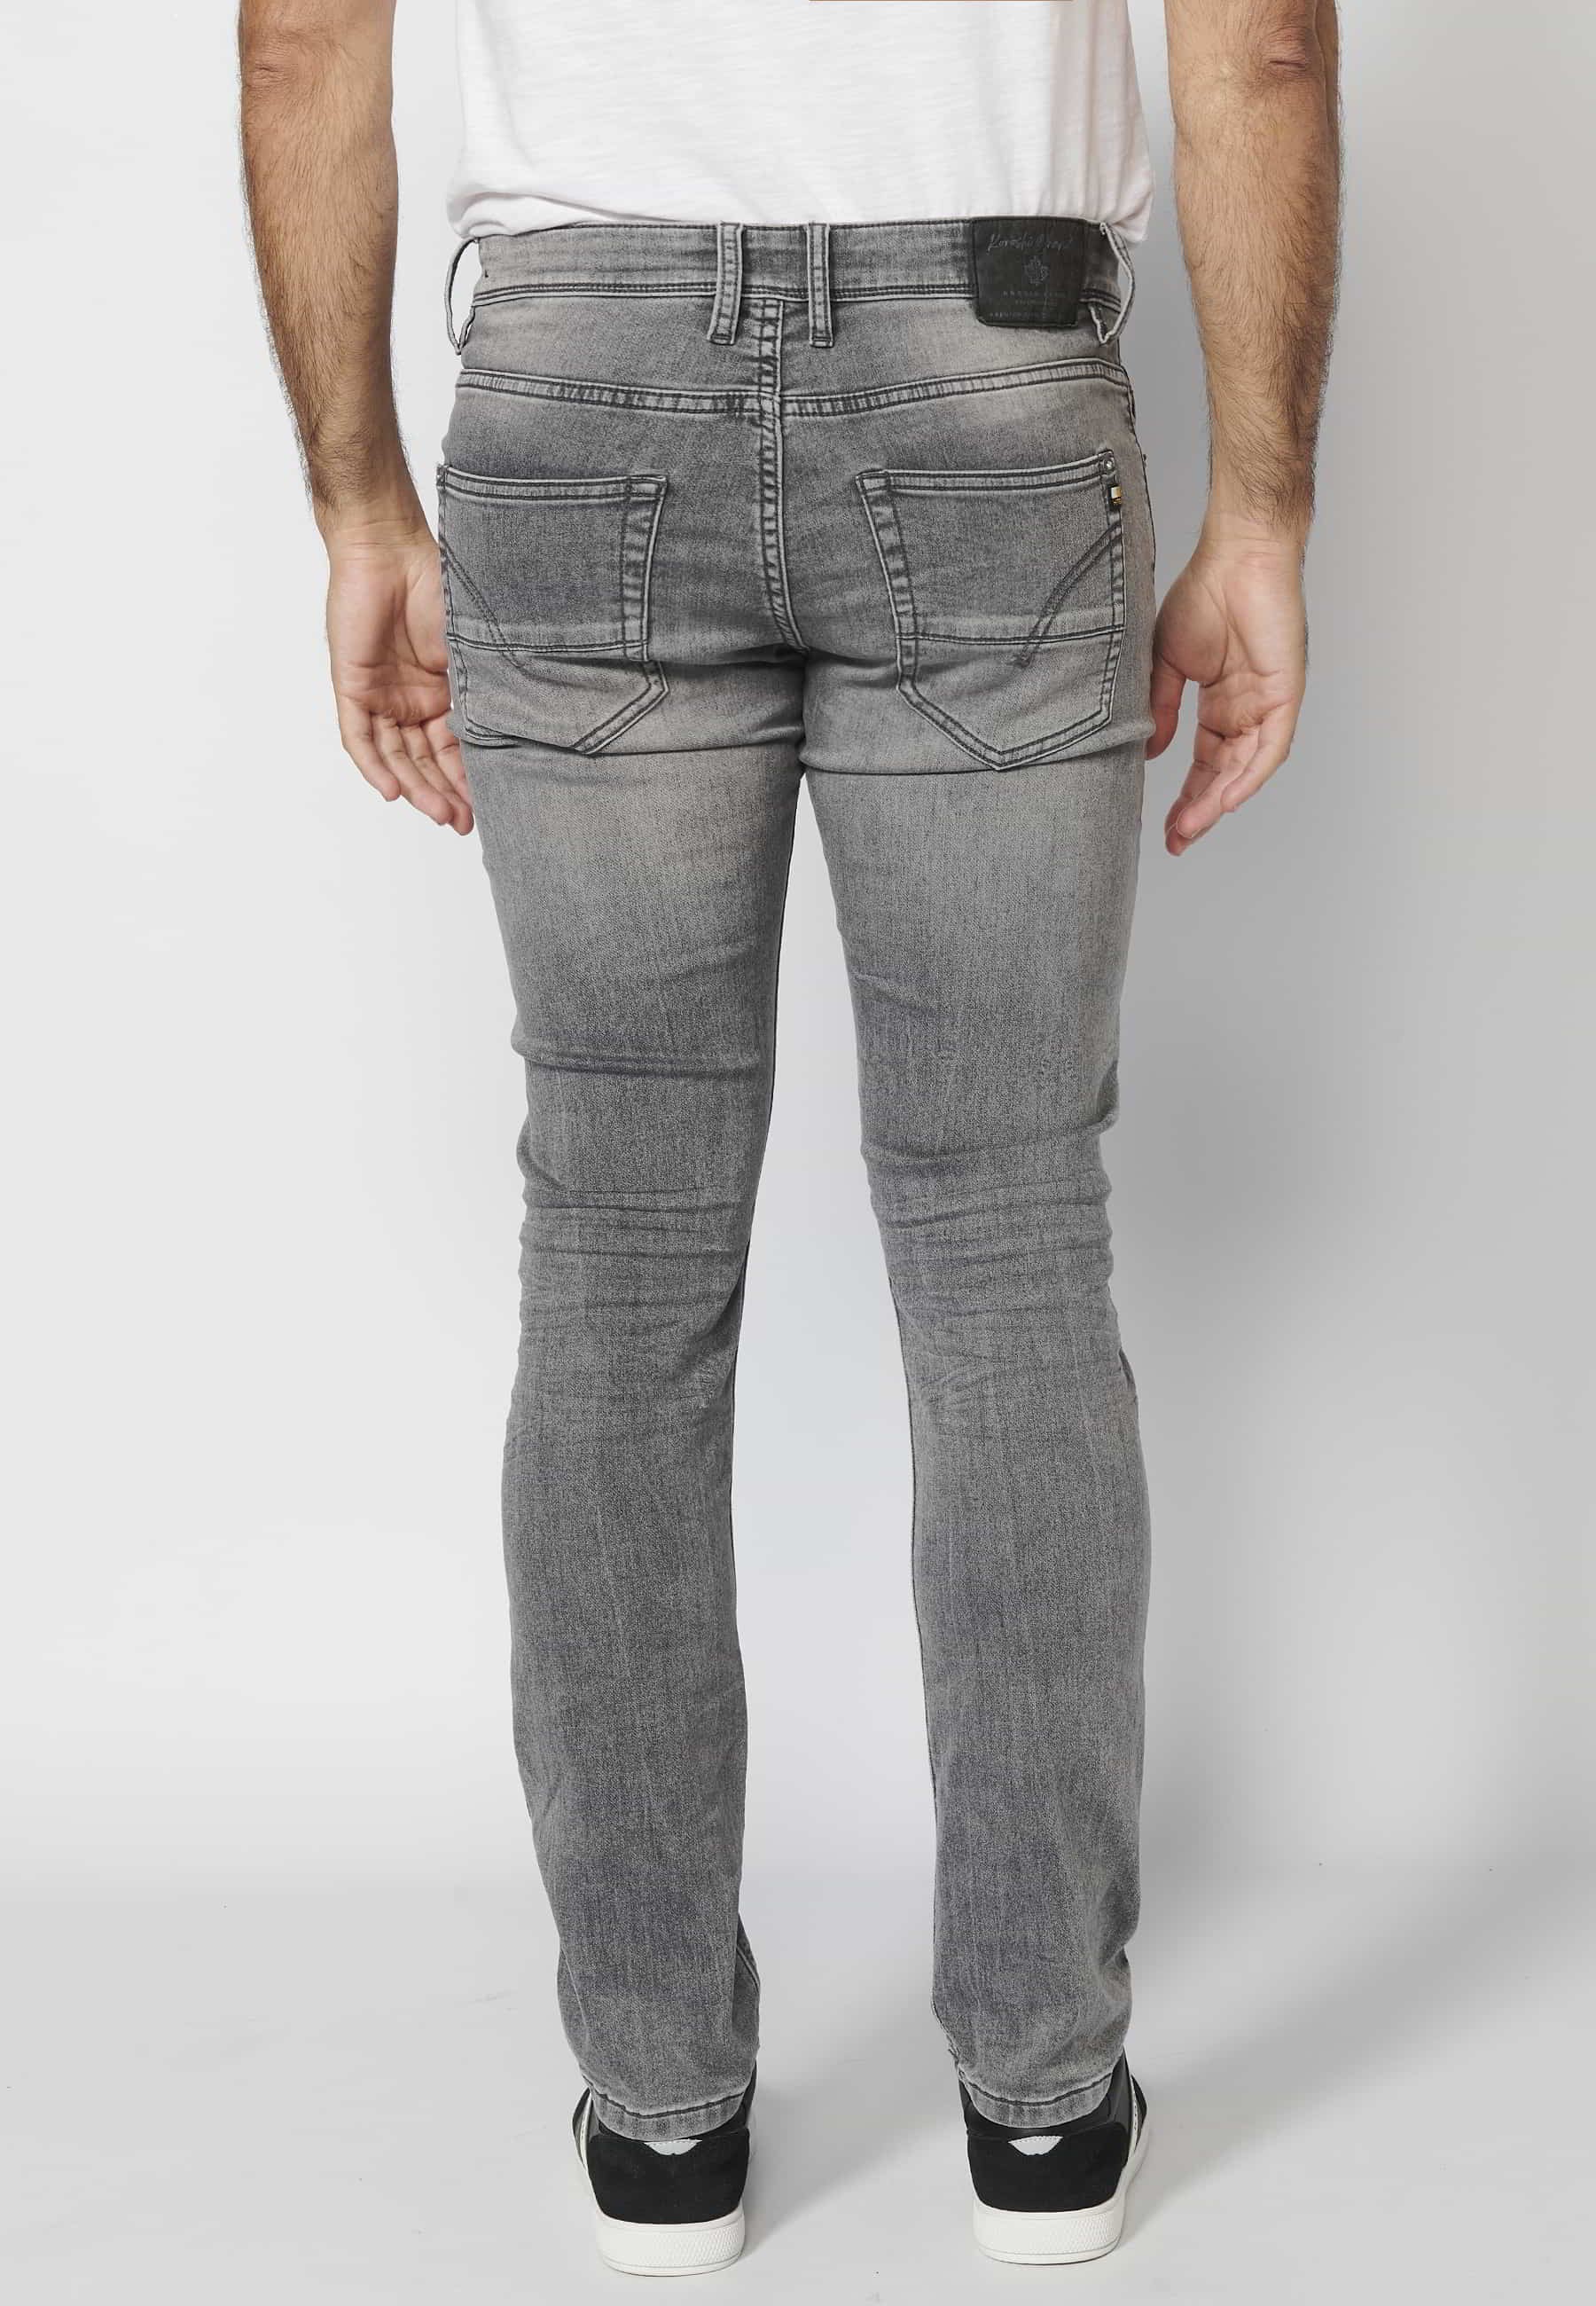 Pantalón largo jeans slim fit con cierre con cremallera y botón cinco bolsillos color denim Gris para Hombre